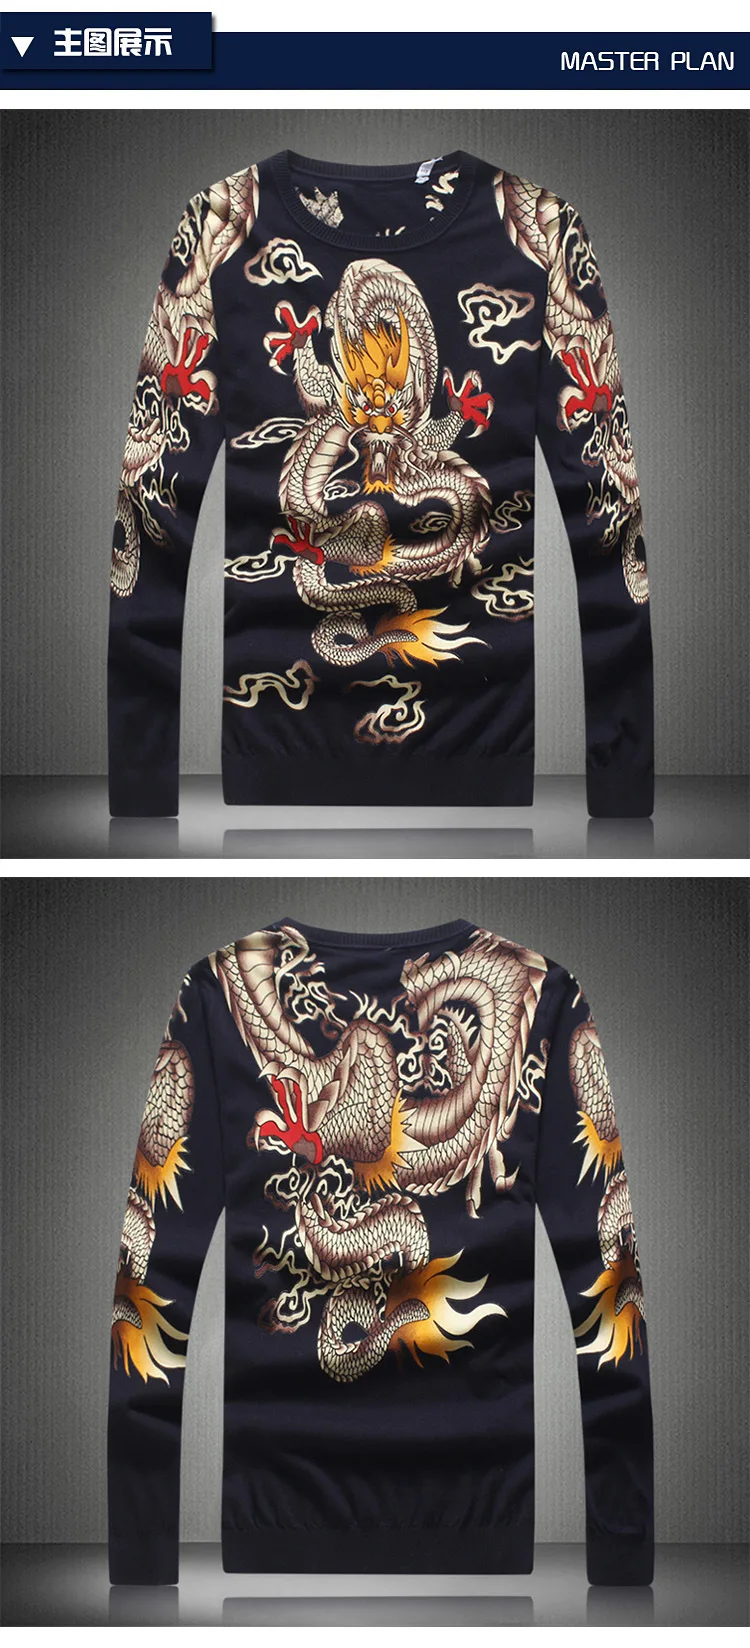 Китайский стиль злой Дракон узор модные повседневные вязаный свитер Осень новинка 2017 года мягкий для кожи качество свитер Мужчины М-XXXXL